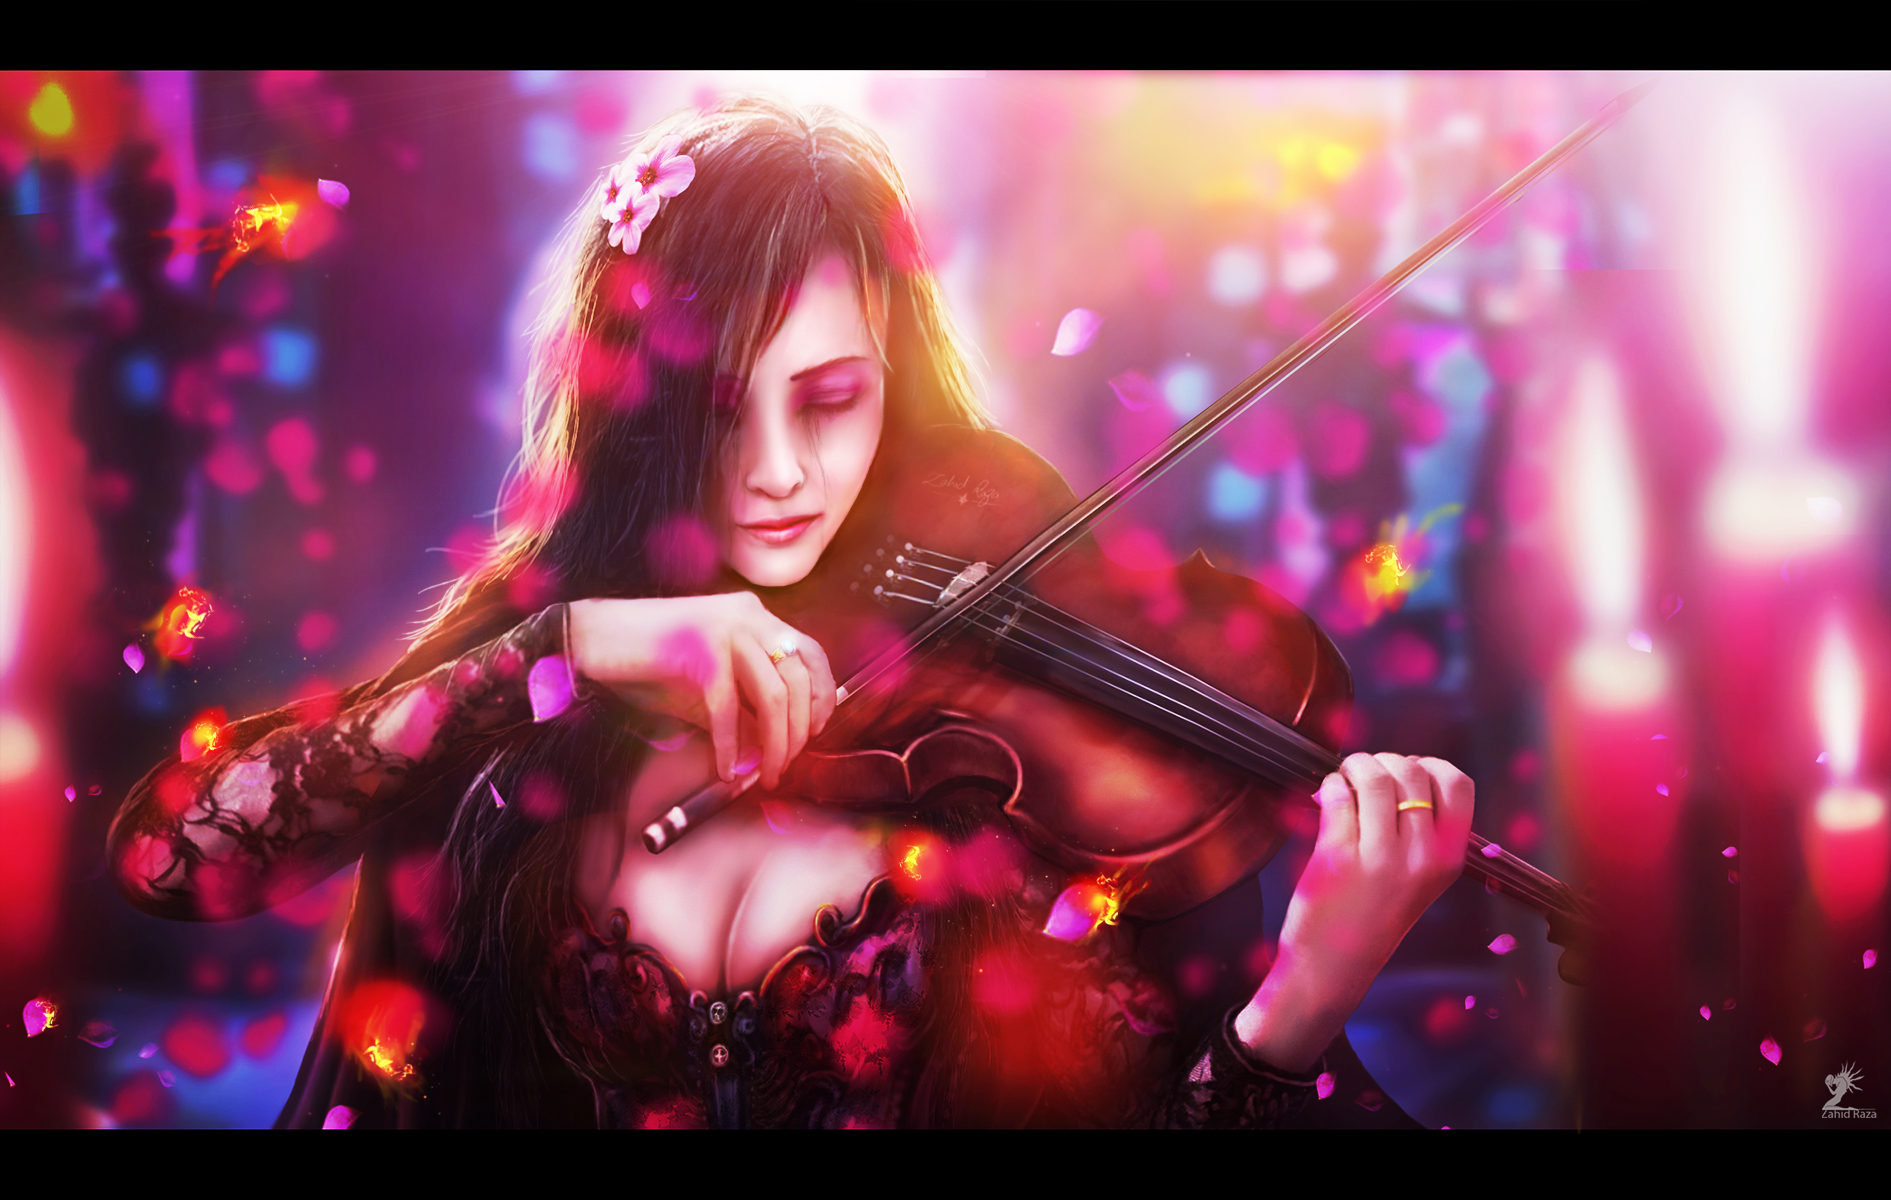 Найти красивейшую музыку. Музыкант скрипач арт фэнтези. Девушки со скрипкой. Девушка со скрипкой арт. Девушка с музыкальным инструментом.